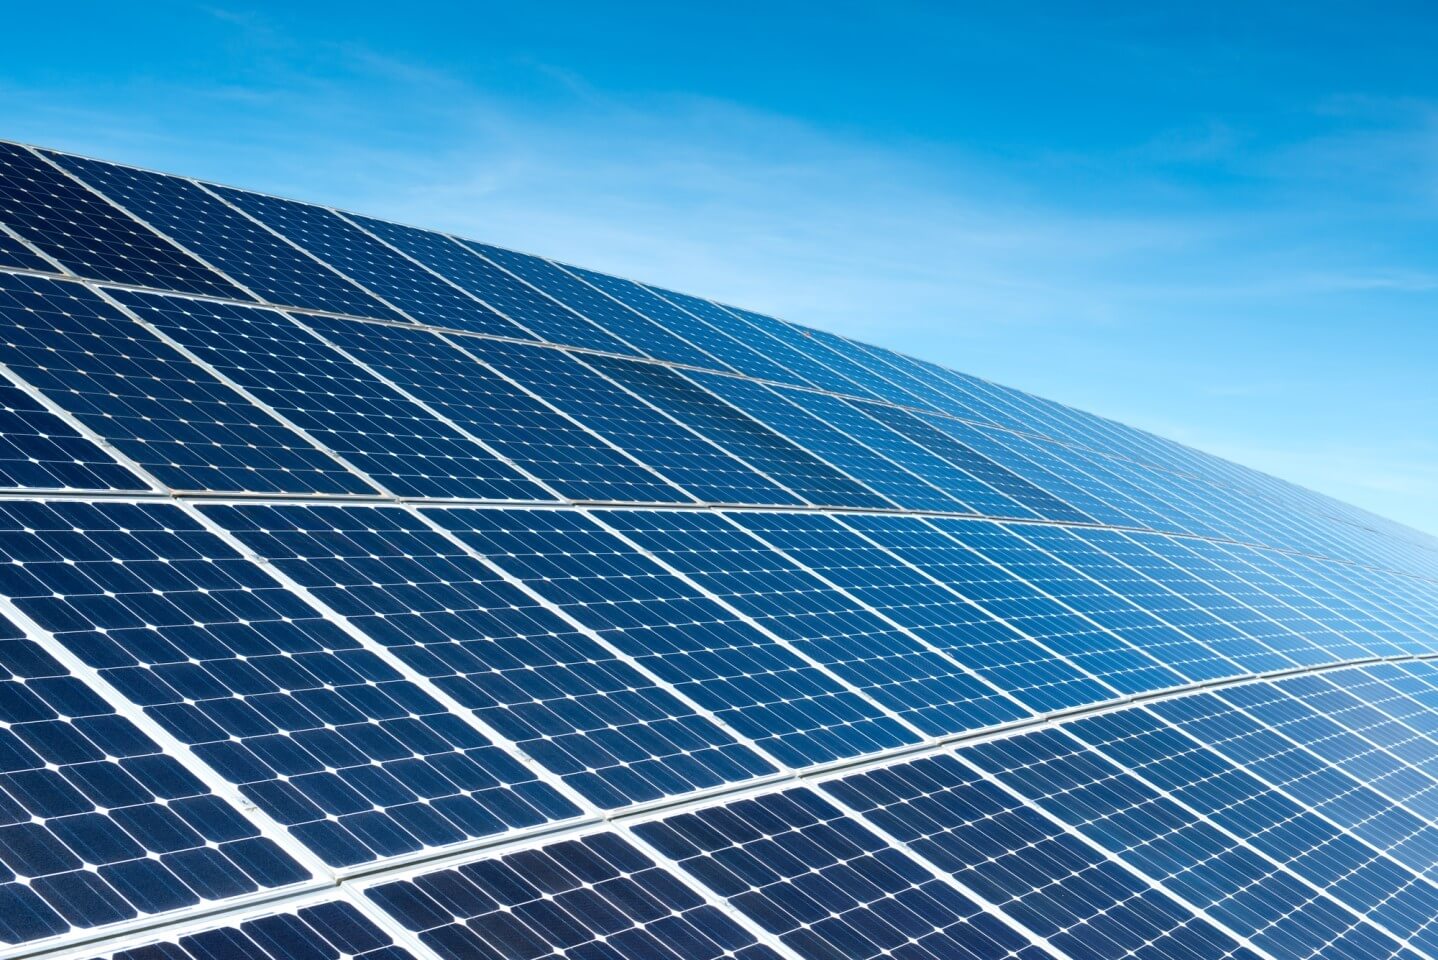 Solar cheapest energy source in Australia!